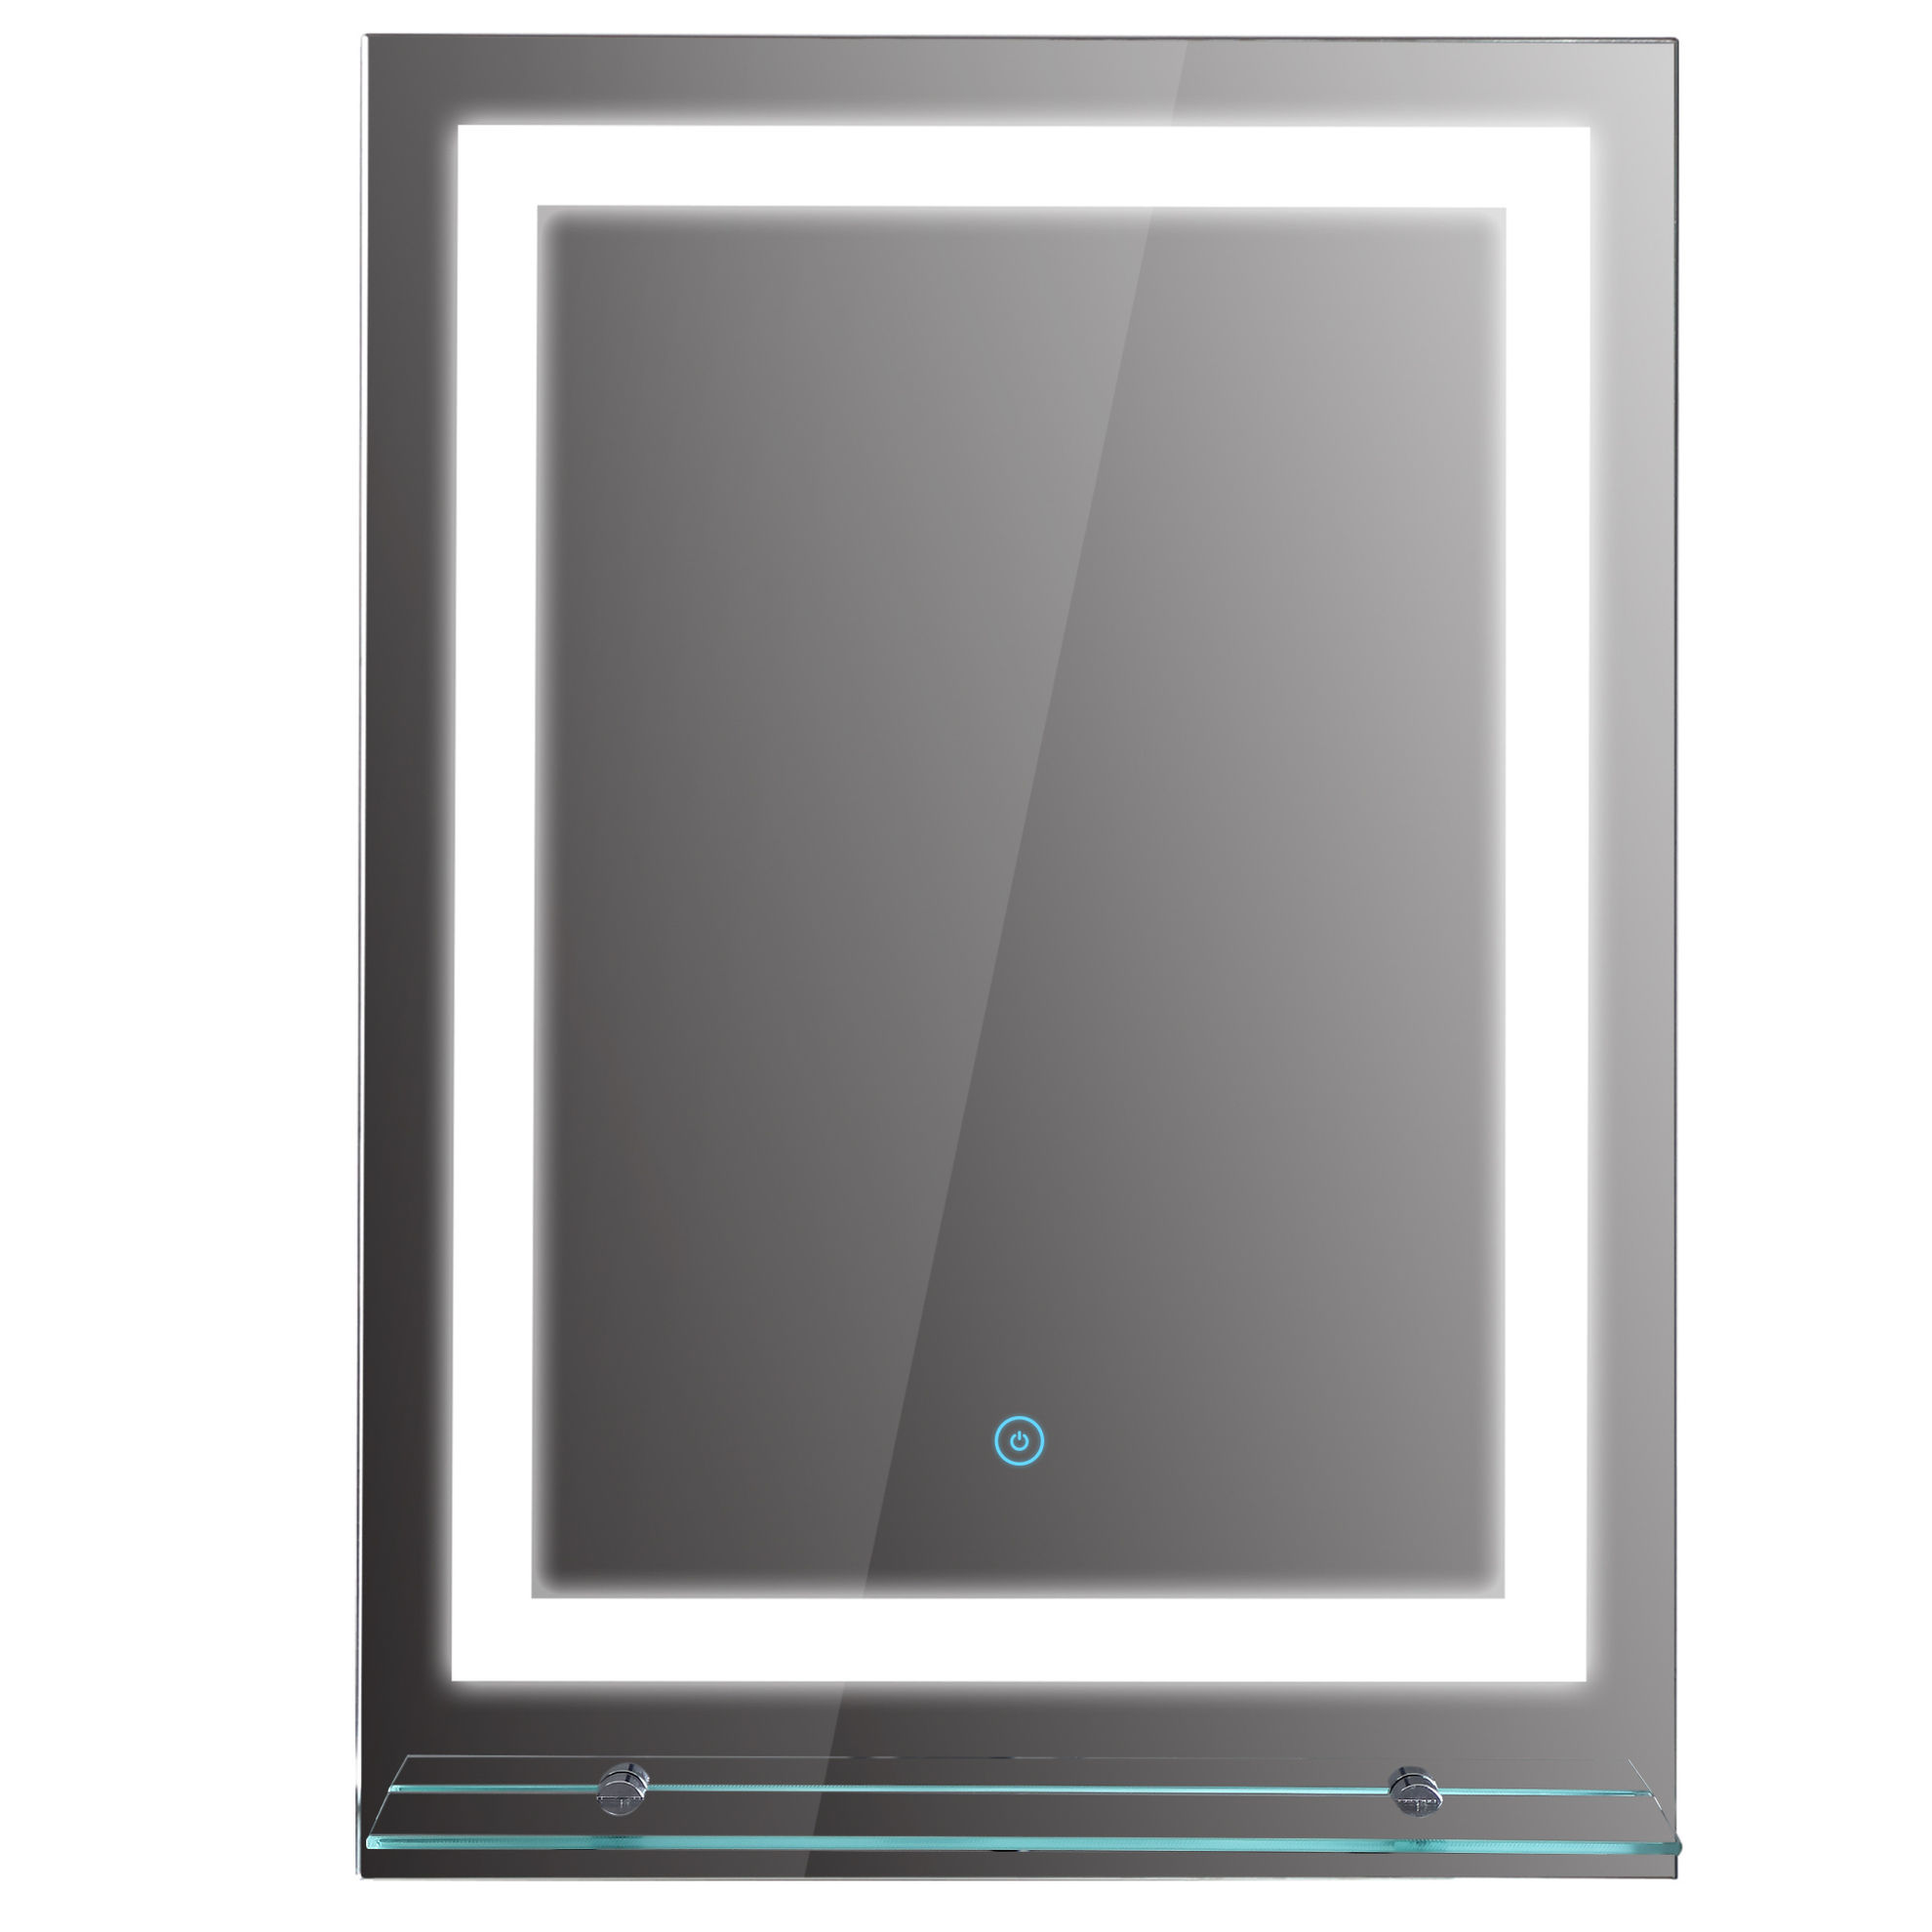 LED Badezimmerspiegel mit Glas-Ablage bestellen | Weltbild.de